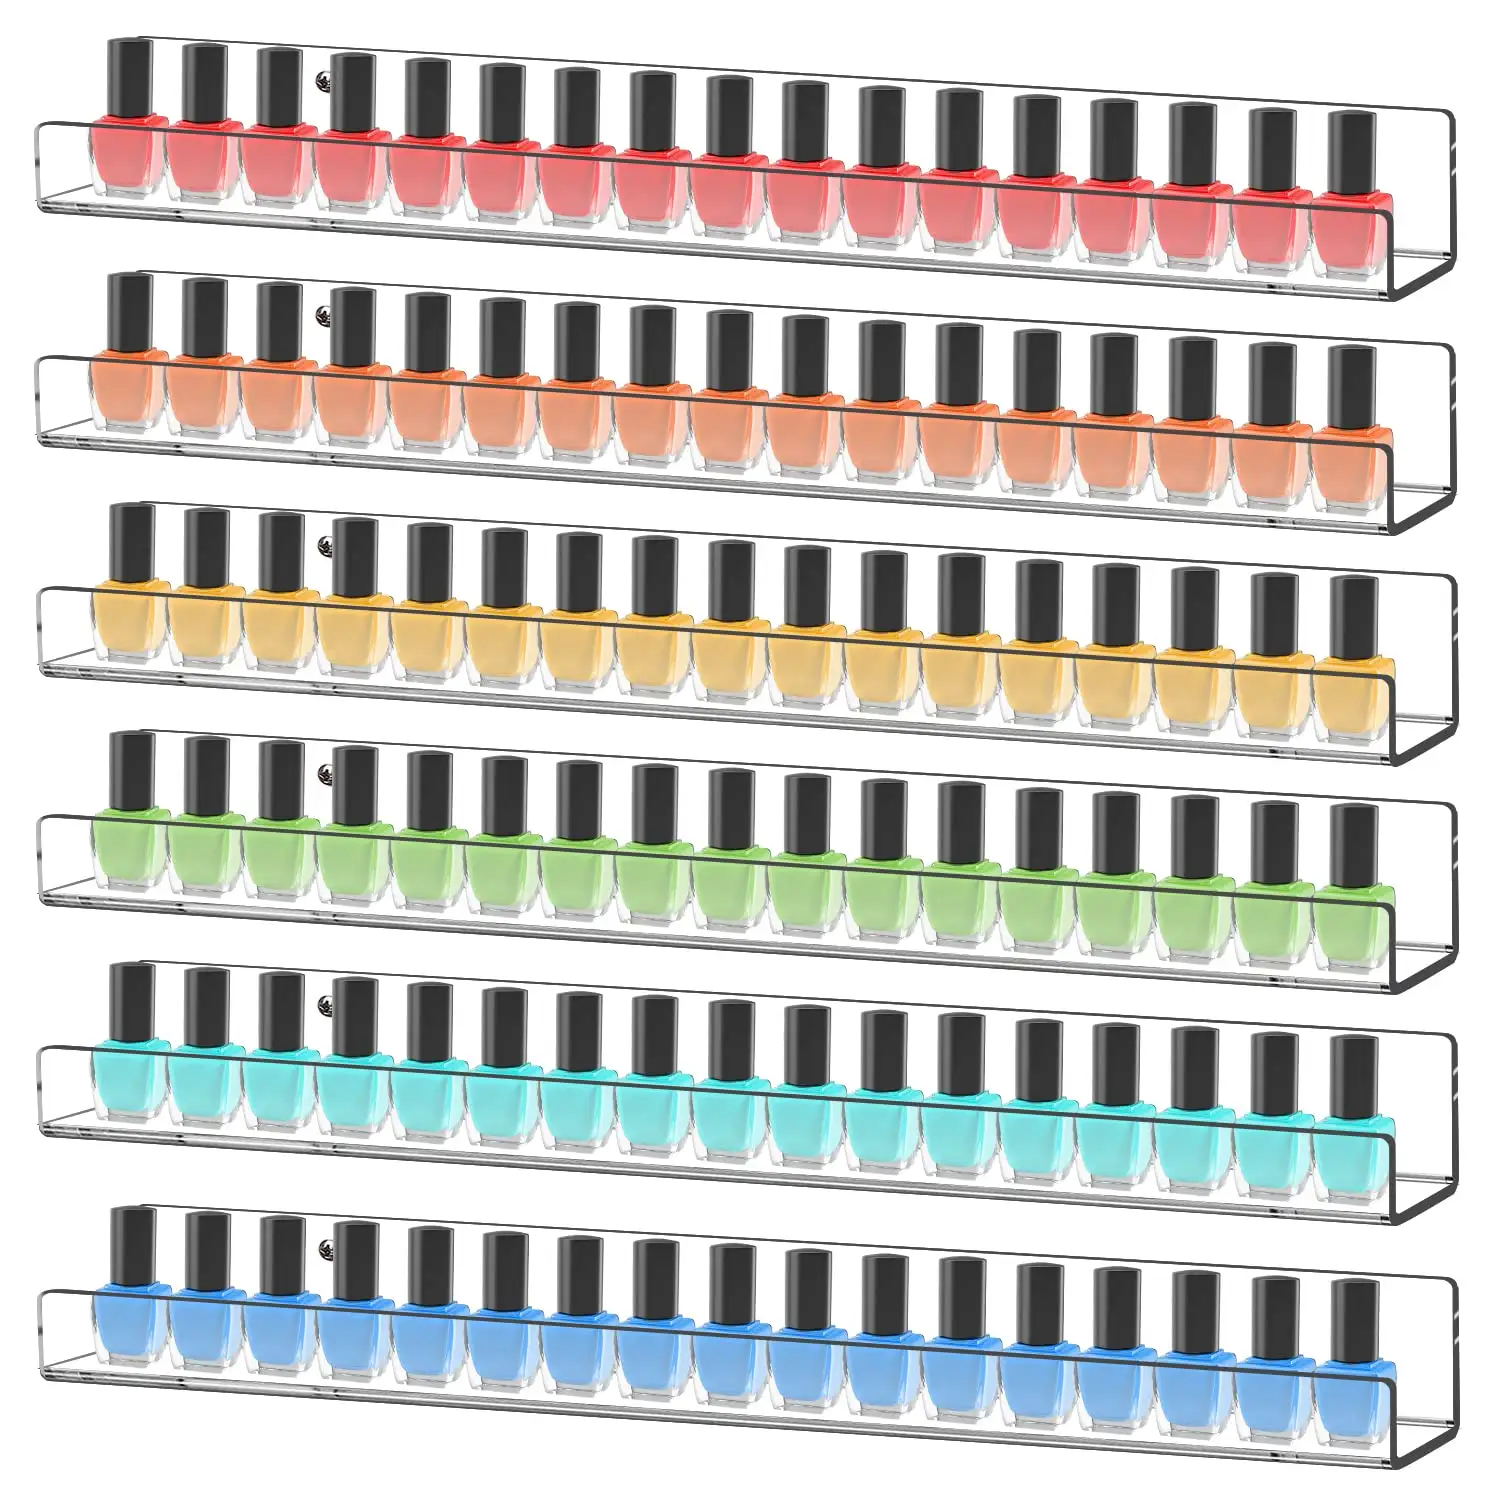 Paquete de 6 estantes para esmaltes de uñas, 15 "acrílico esmalte de uñas organizador montado en la pared muestra 90 botellas, estantería de pared flotante transparente para niños